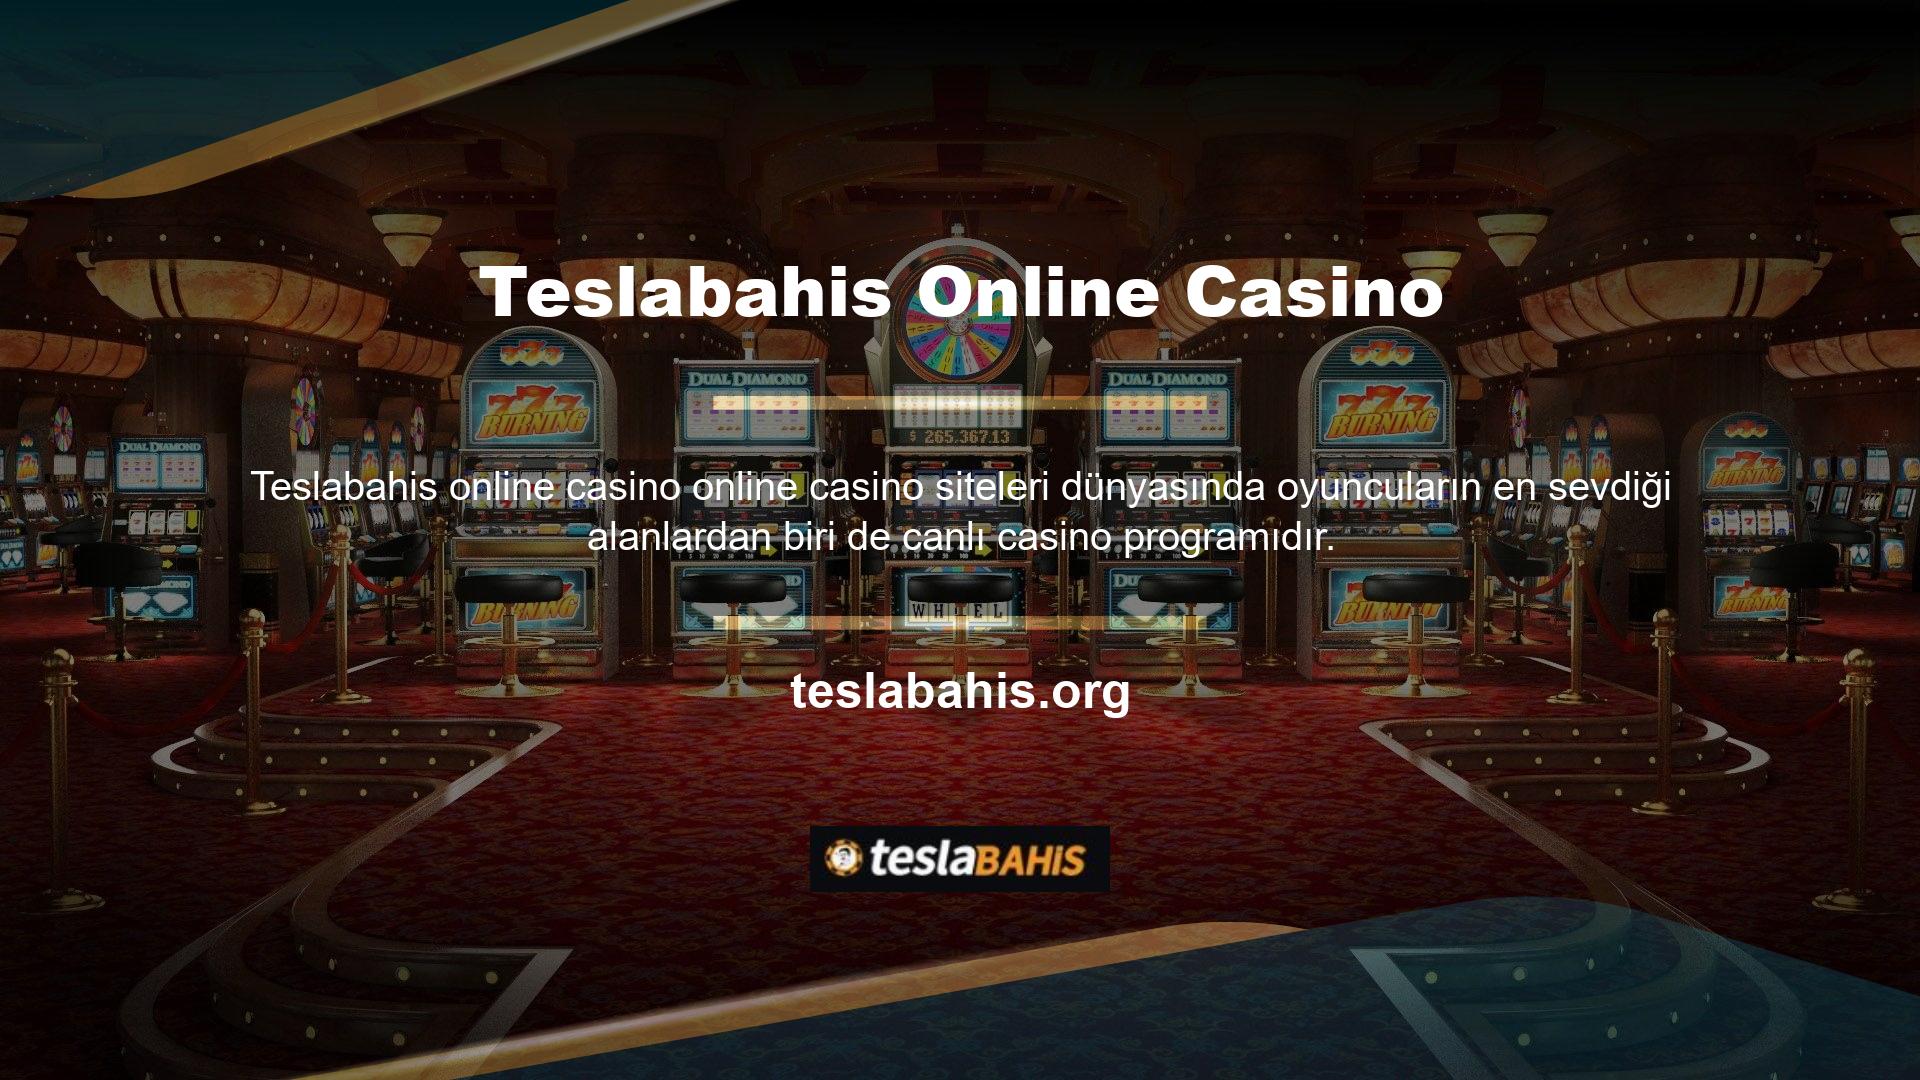 Canlı casino programları, gerçek rakiplere ve krupiyelere karşı bahis kategorileri sunar